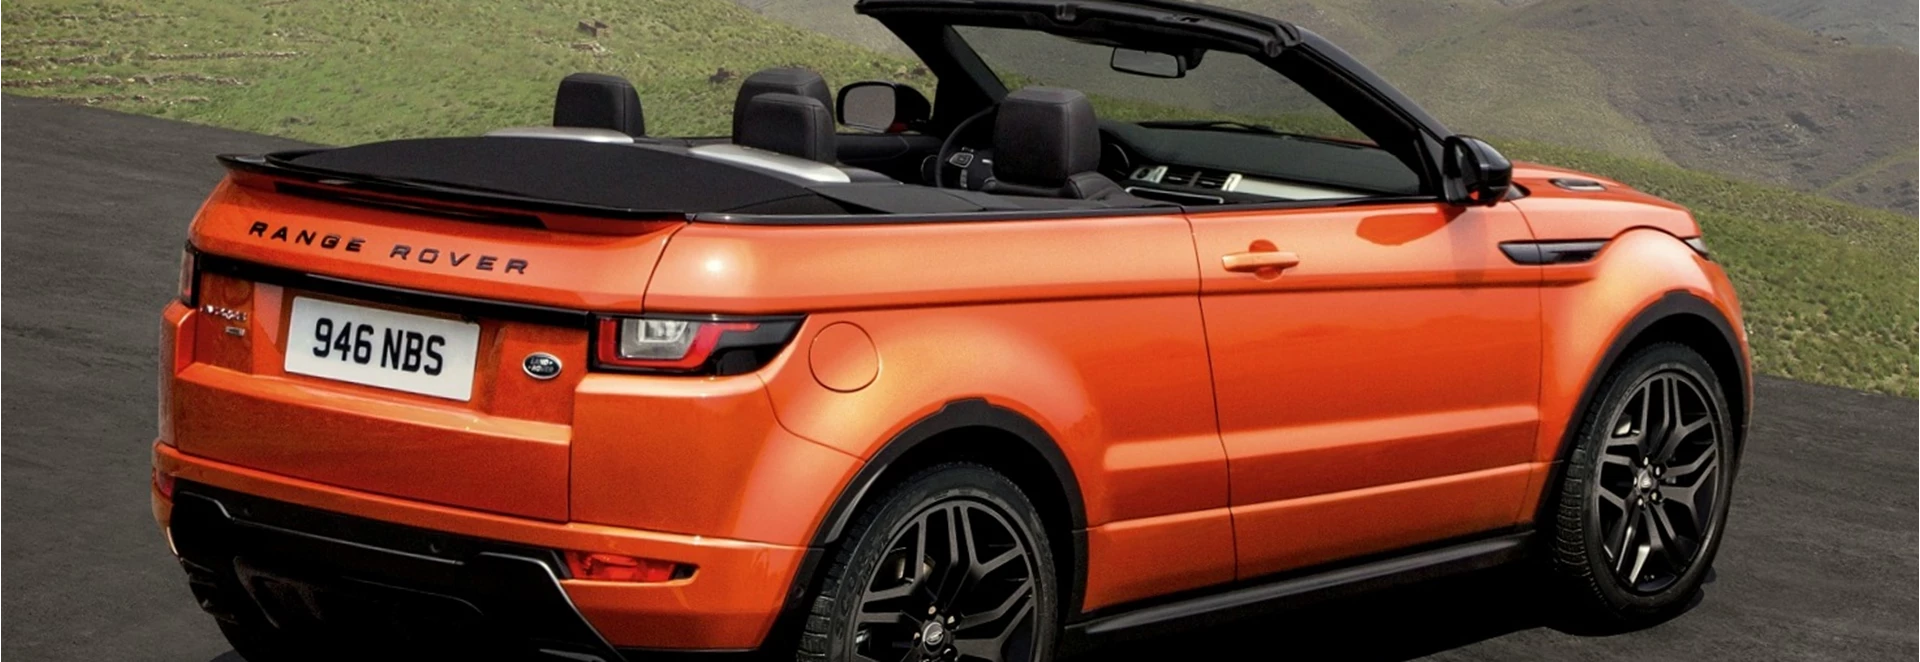 Range Rover Evoque Convertible to make public bow soon